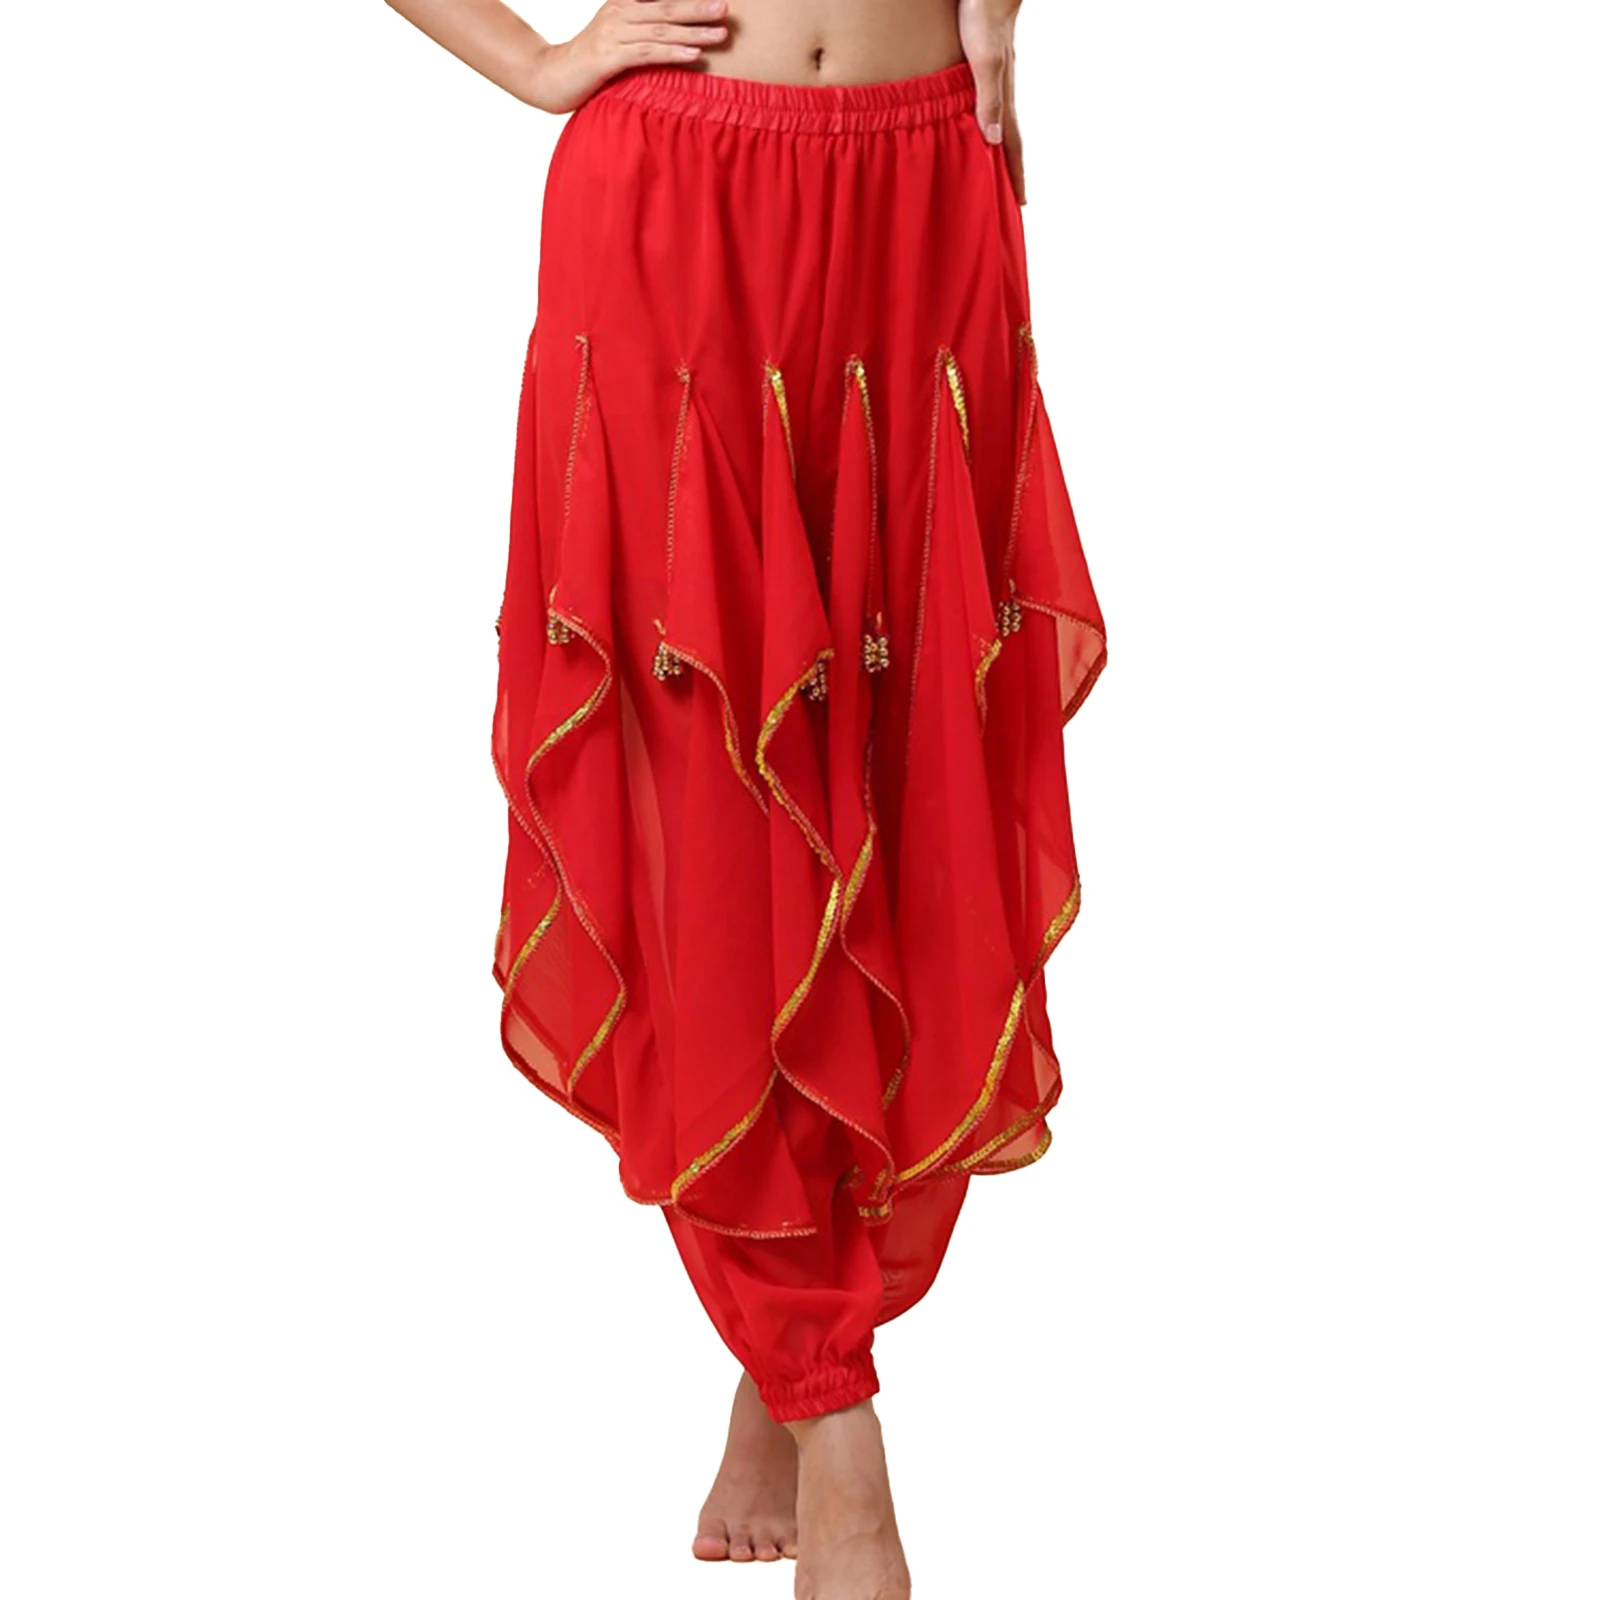 נשים מזרחיות הודו ריקודי בטן ביצועים תחפושת נצנצים Trim מכנסי גומי אלסטי קפלים מכנסיים עם חרוזי פלסטיק - 2